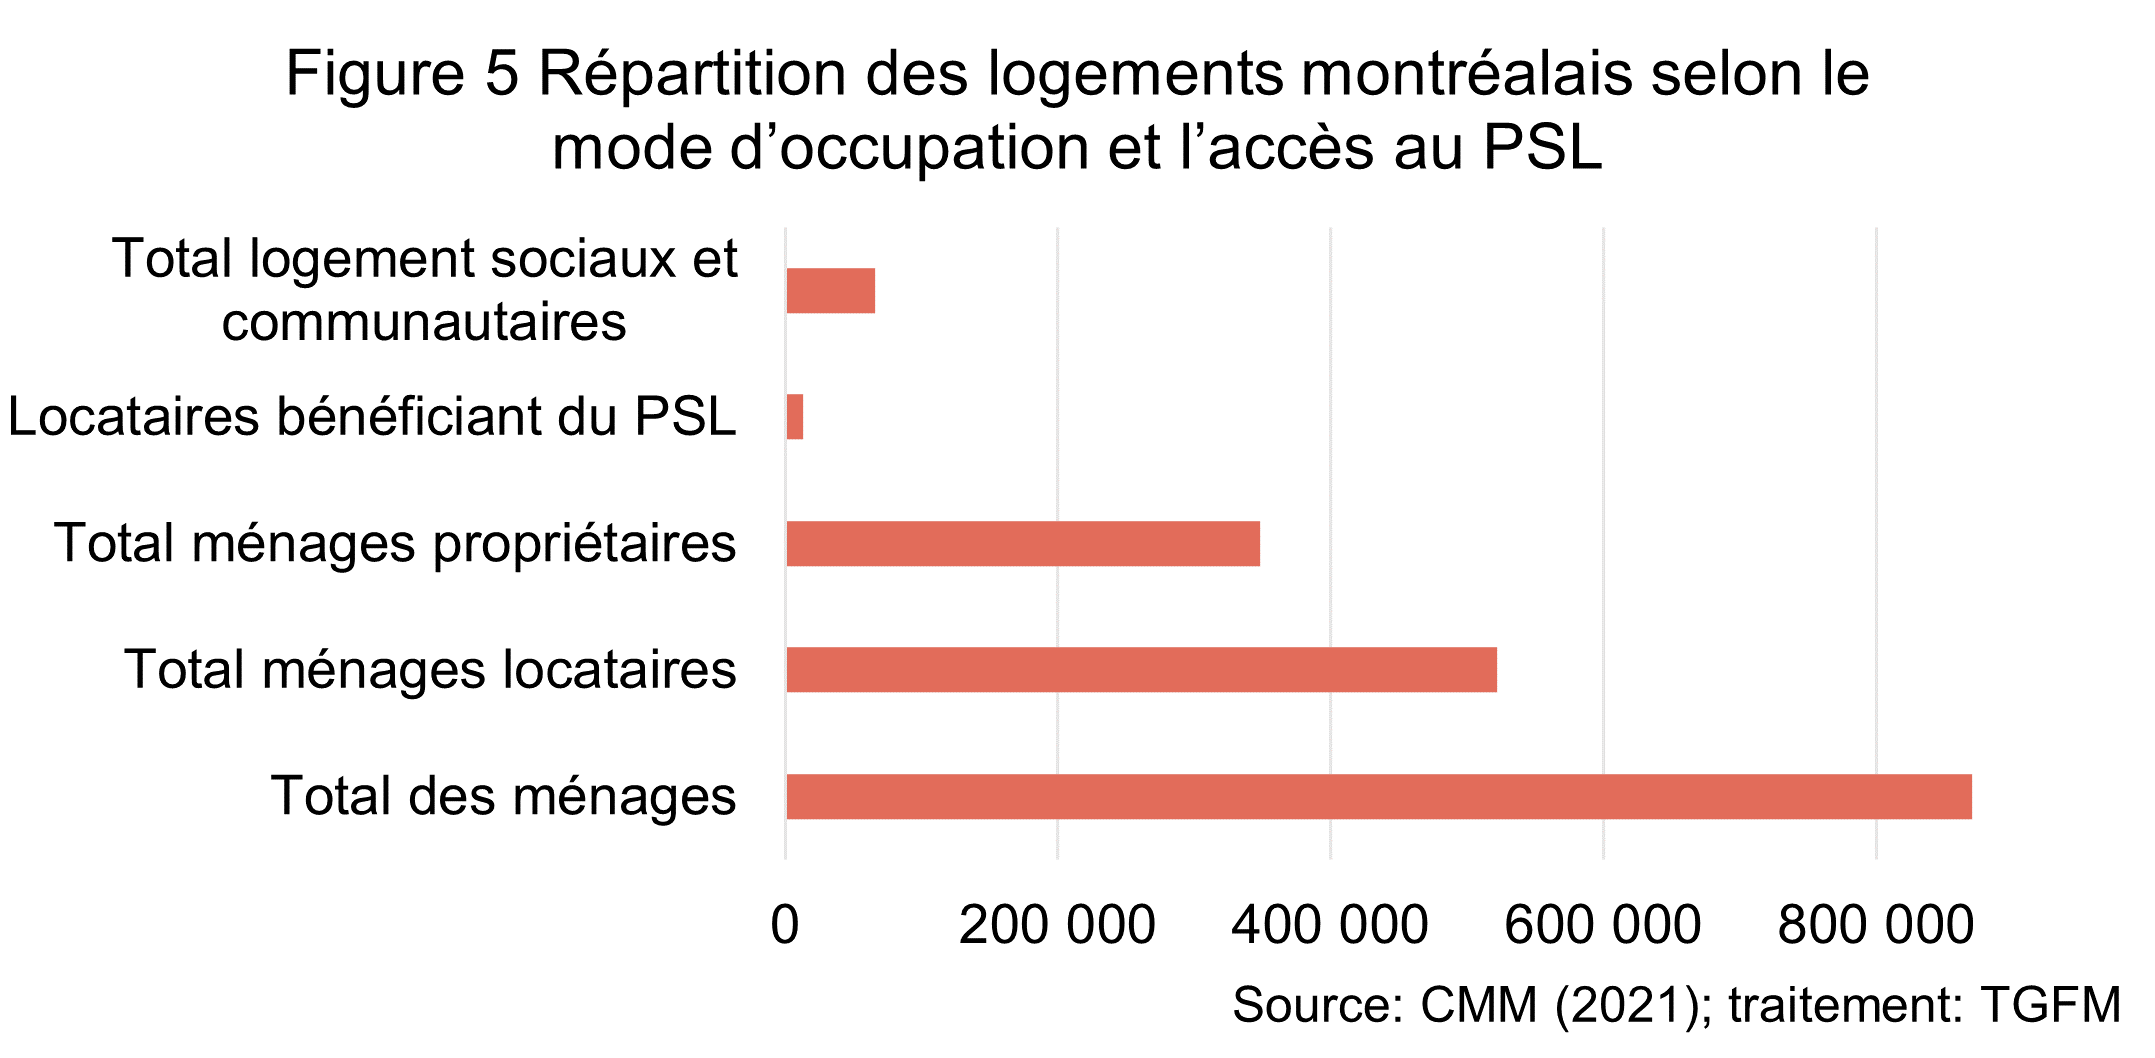 La figure illustre la place marginale qu'occupe les logements sociaux et communautaire occupent au sein de l'ensemble des logements Montréalais. 